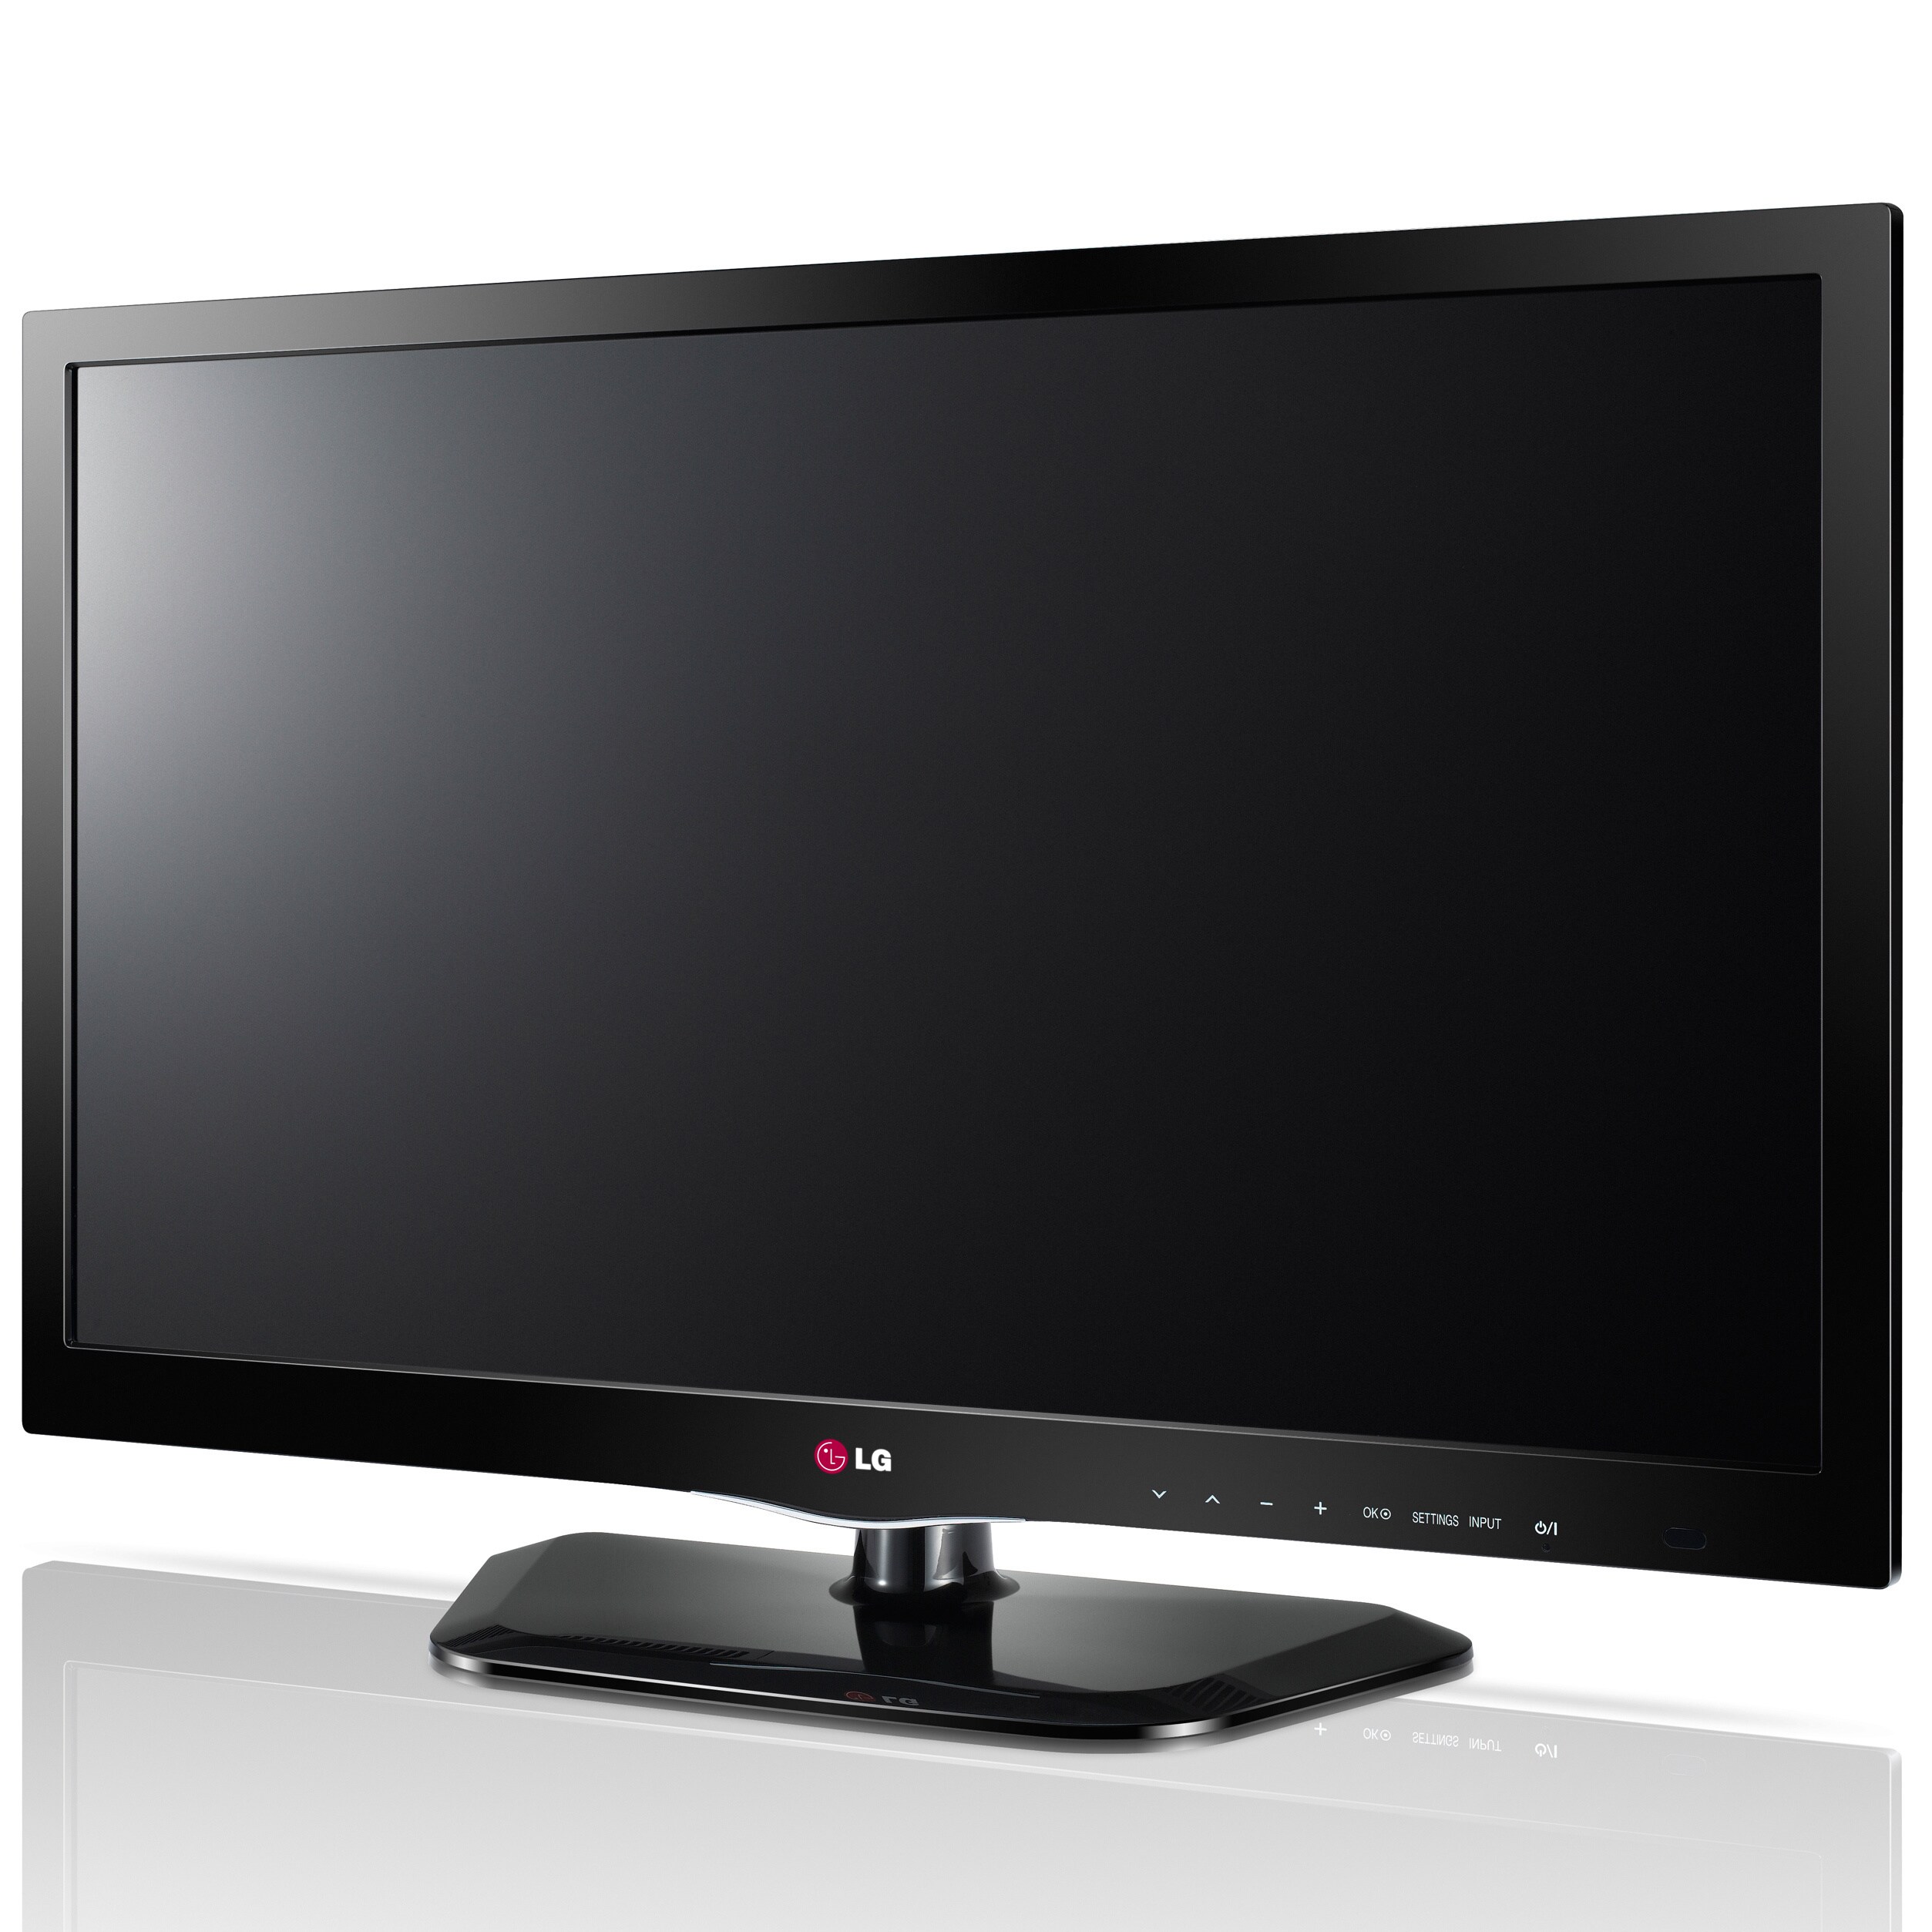 Телевизоры lg 2013 года. LG 29ln450u. Телевизор LG 29ln450u. LG модель: 29ln450u. Телевизор LG 26ln450u 26".